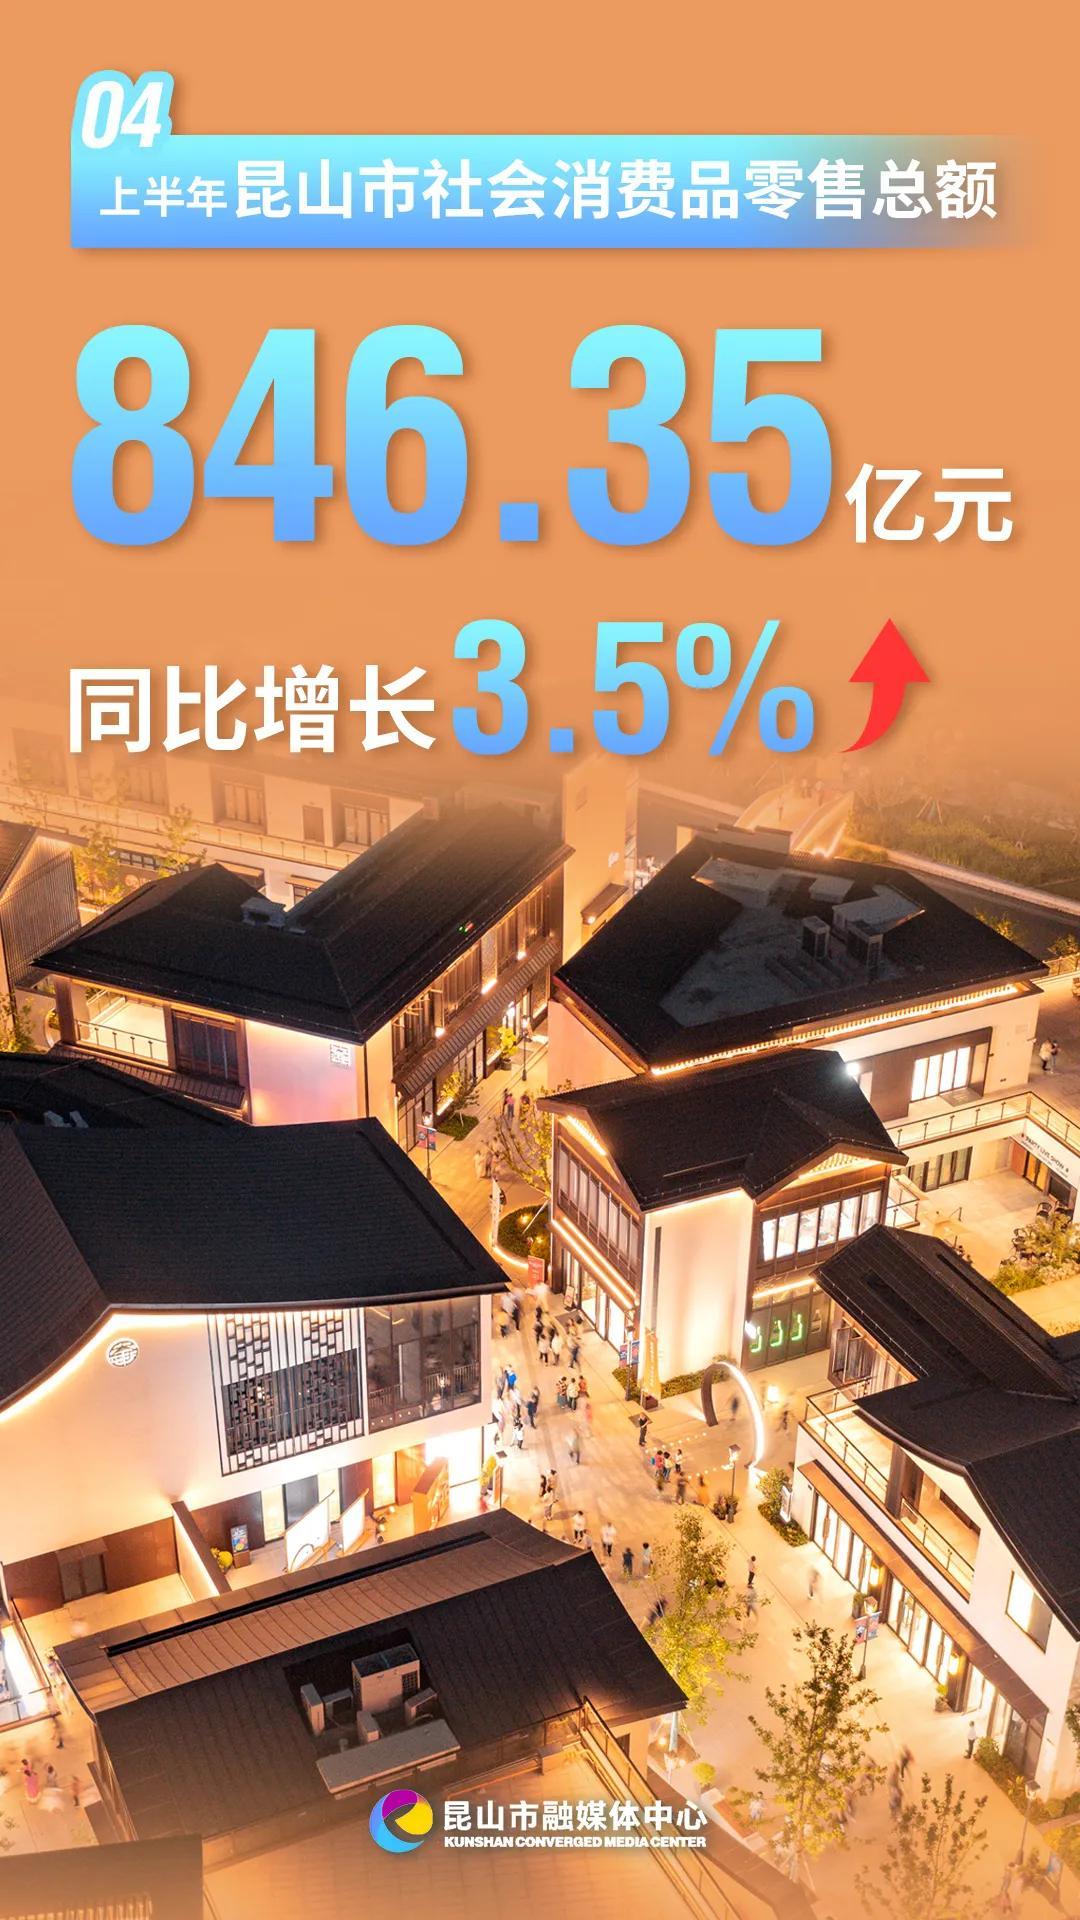 稳中有进！江苏昆山上半年GDP同比增长6.3%